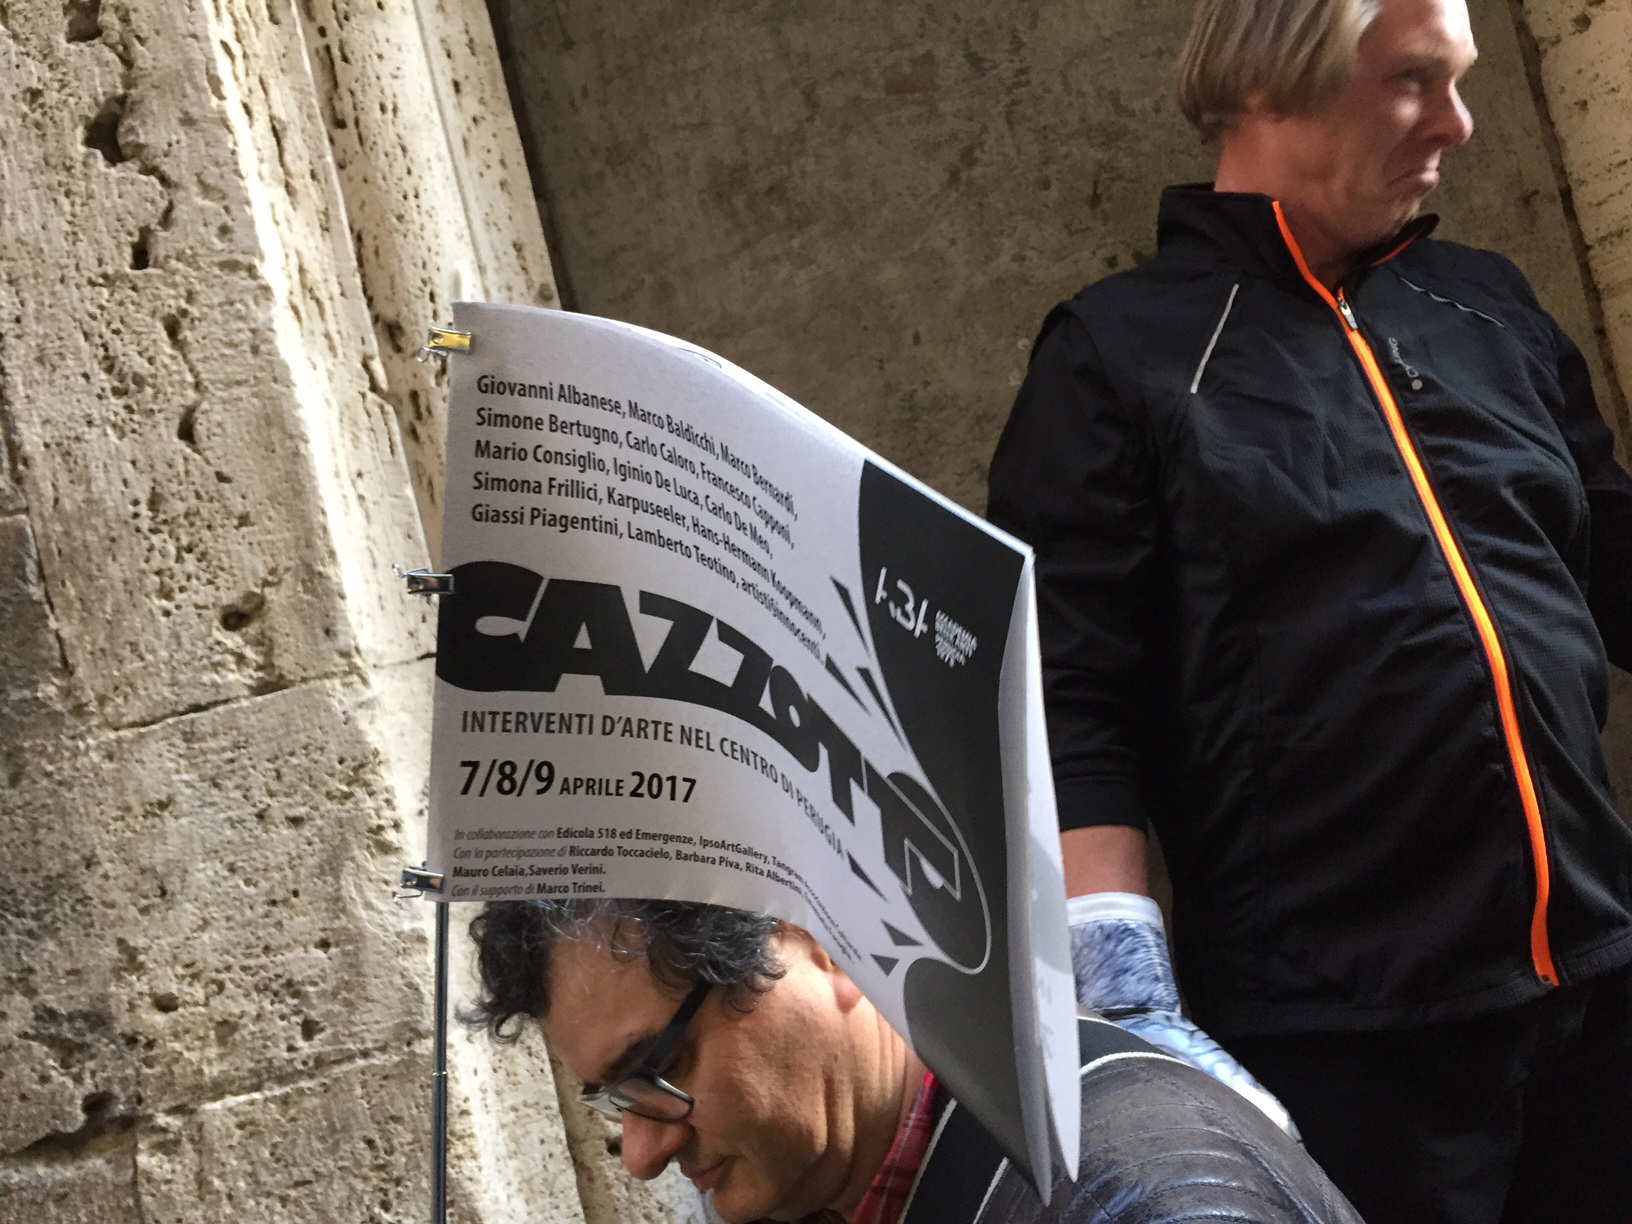 Cazzotto 2017, Perugia